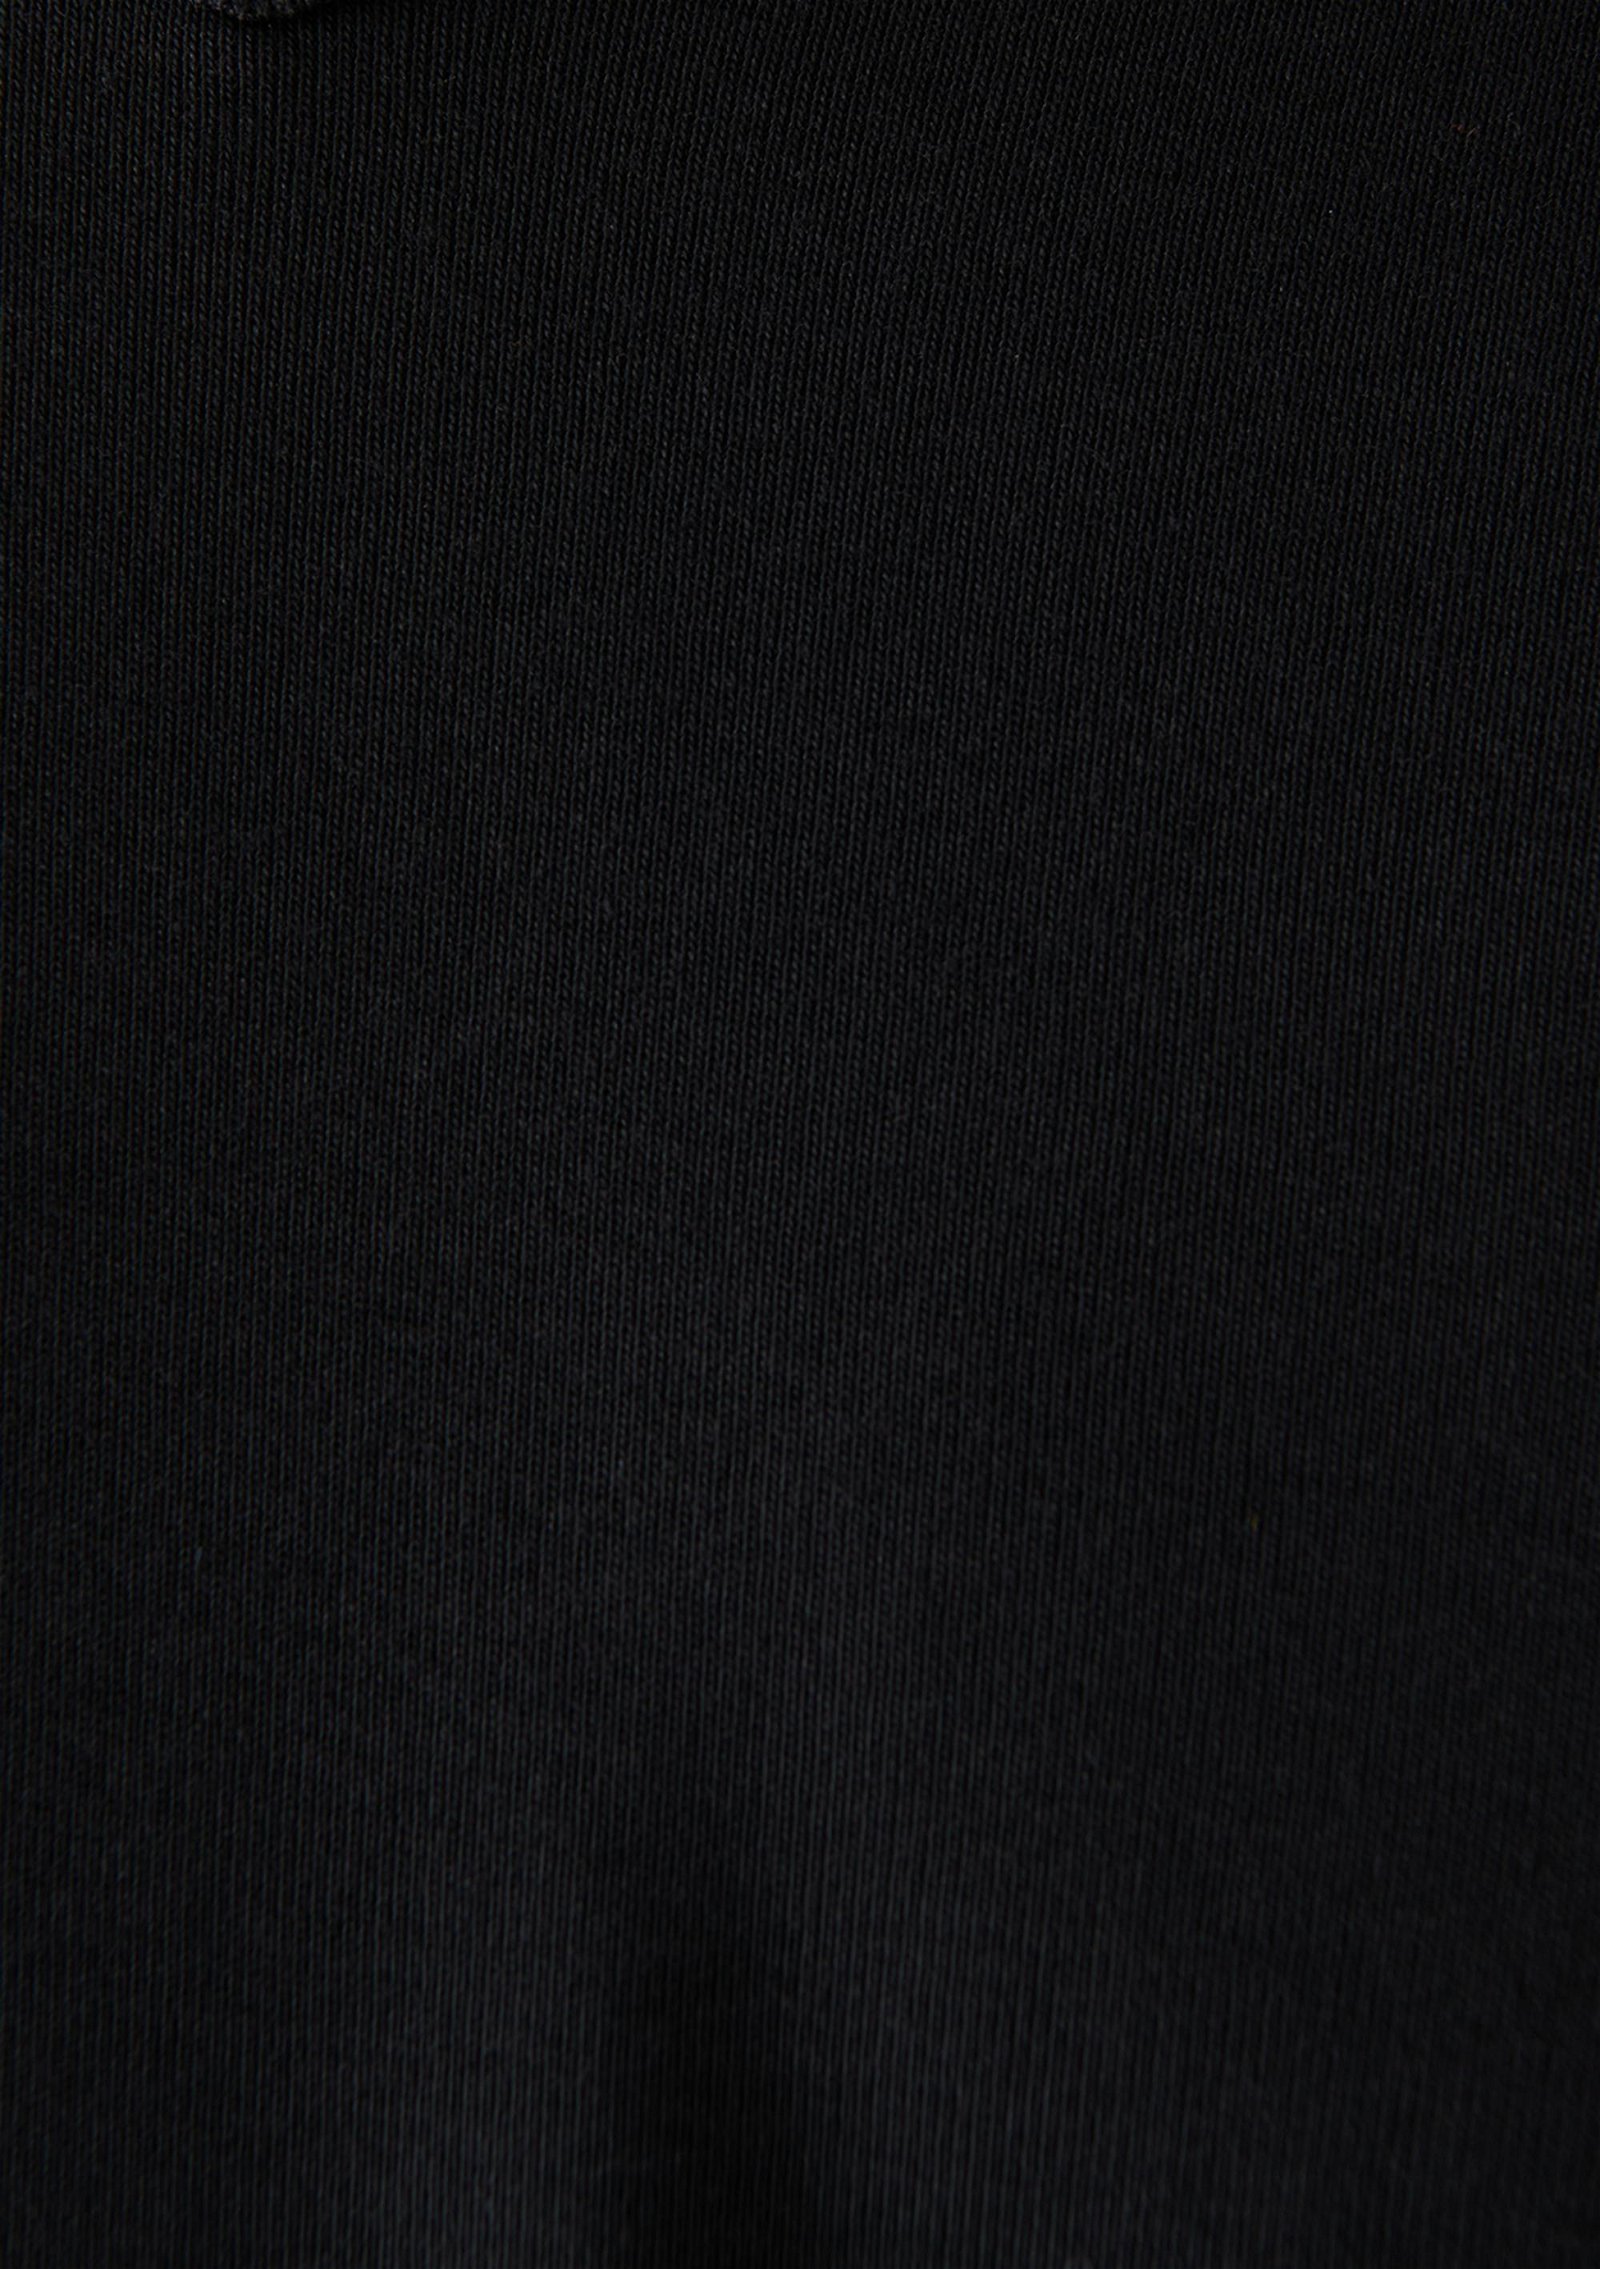 Mavi V Yaka Siyah Basic Tişört Slim Fit / Dar Kesim 063748-900